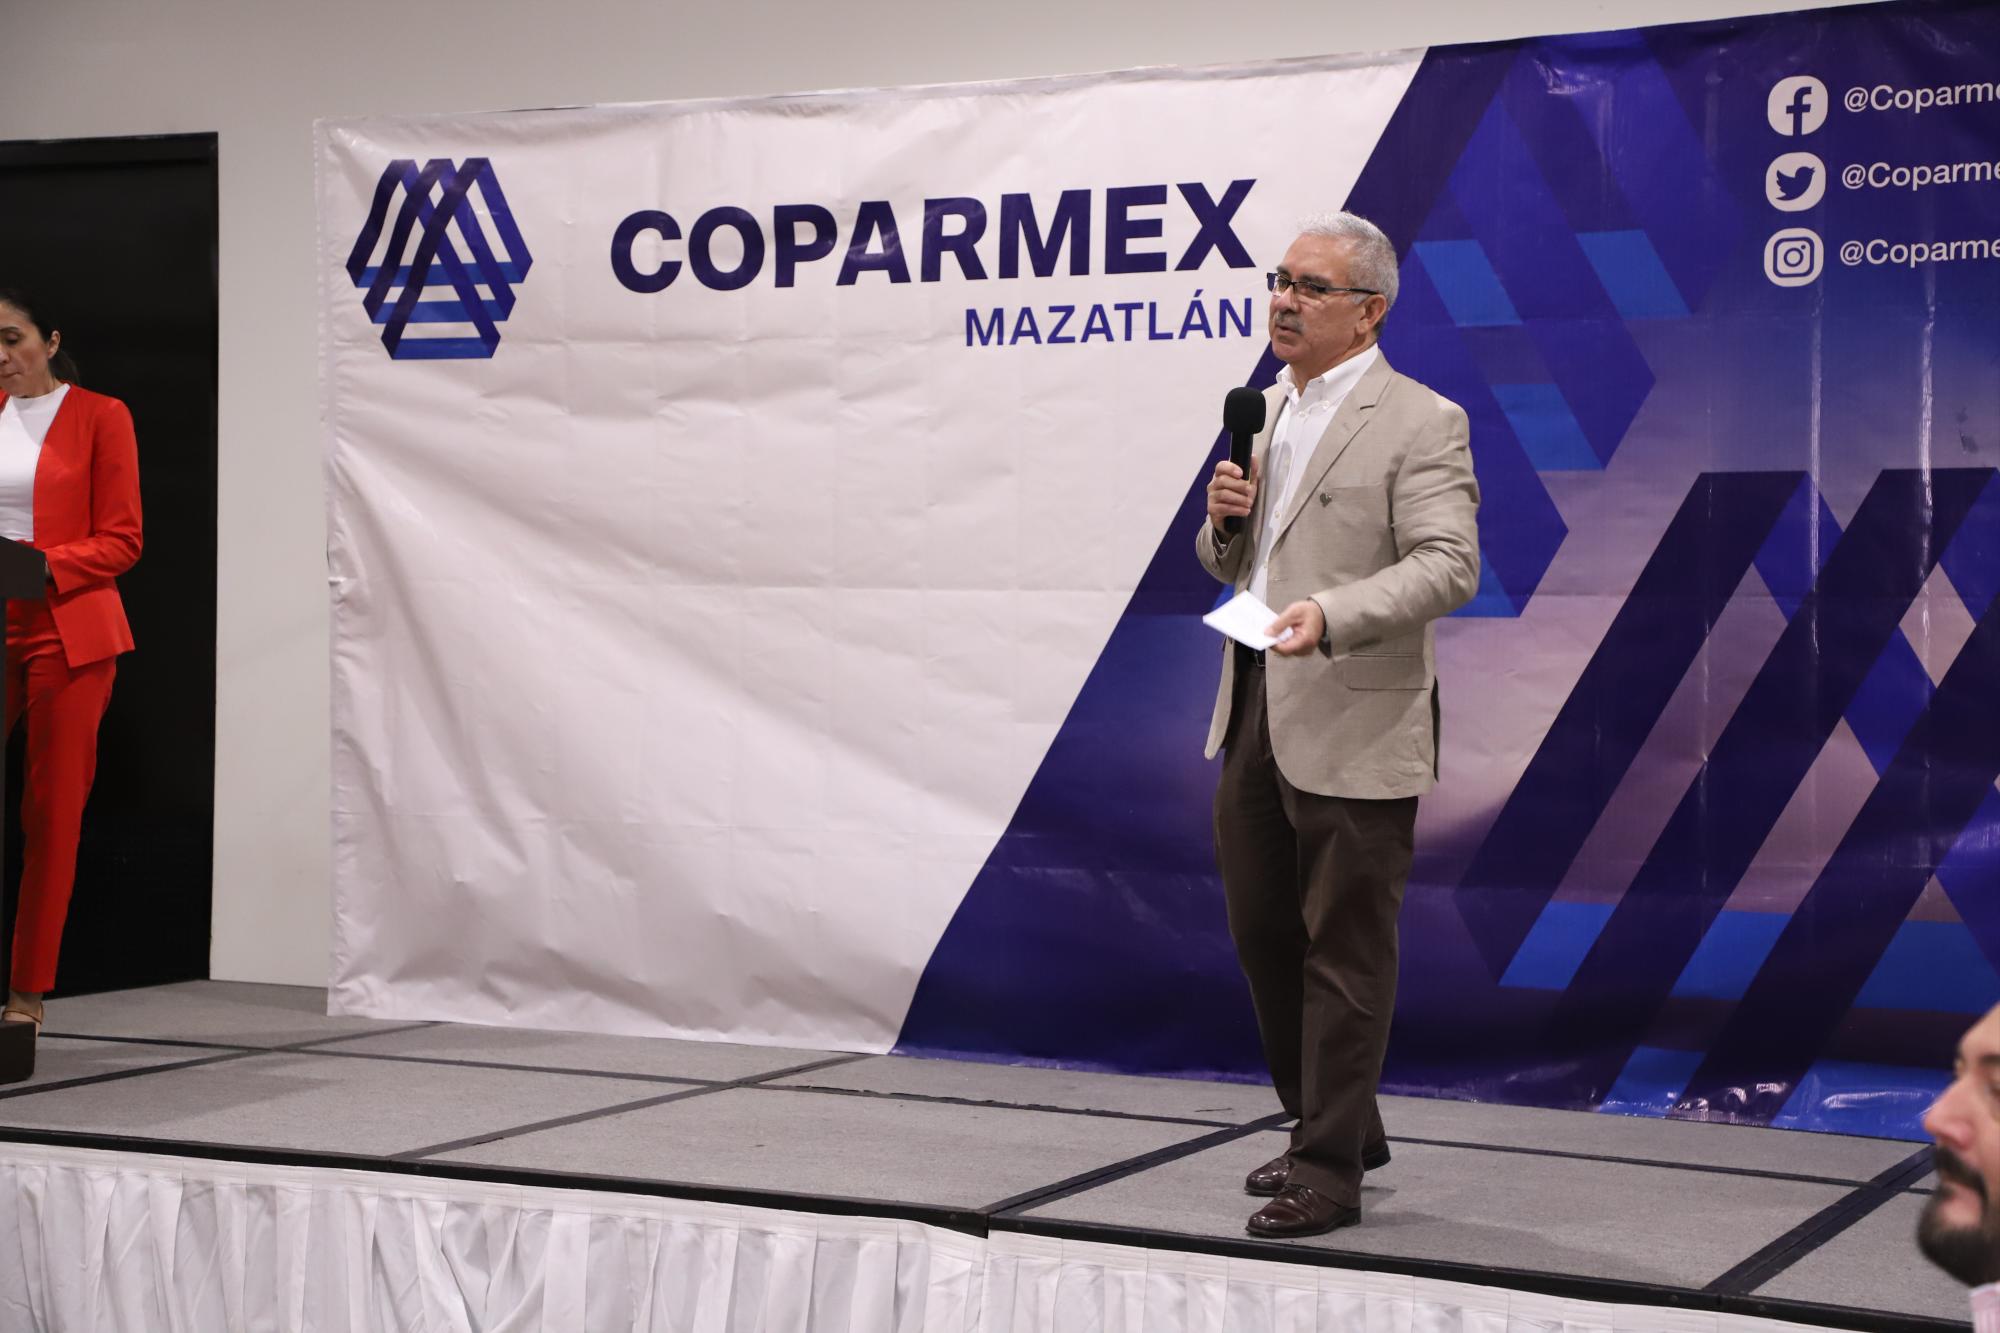 $!Fernando Valdez, presidente de Coparmex Mazatlán, expresó un mensaje de bienvenida a los presentes.